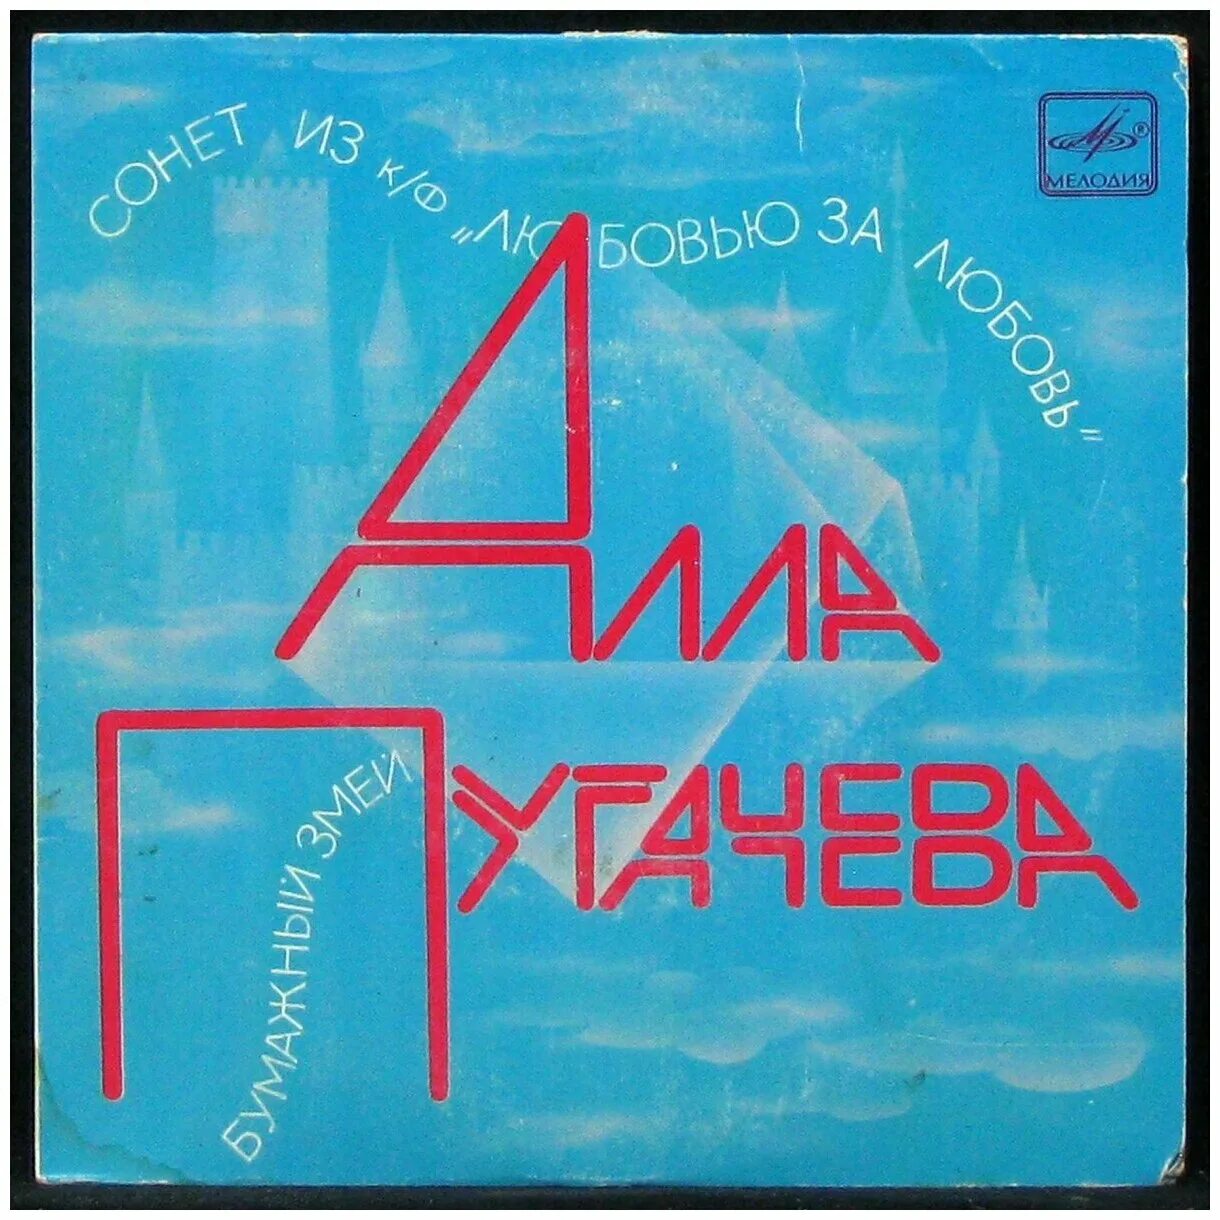 Пугачева бумажный змей. Alla Pugacheva 1984 - бумажный змей. Обложка от пластинки Аллы Пугачевой.